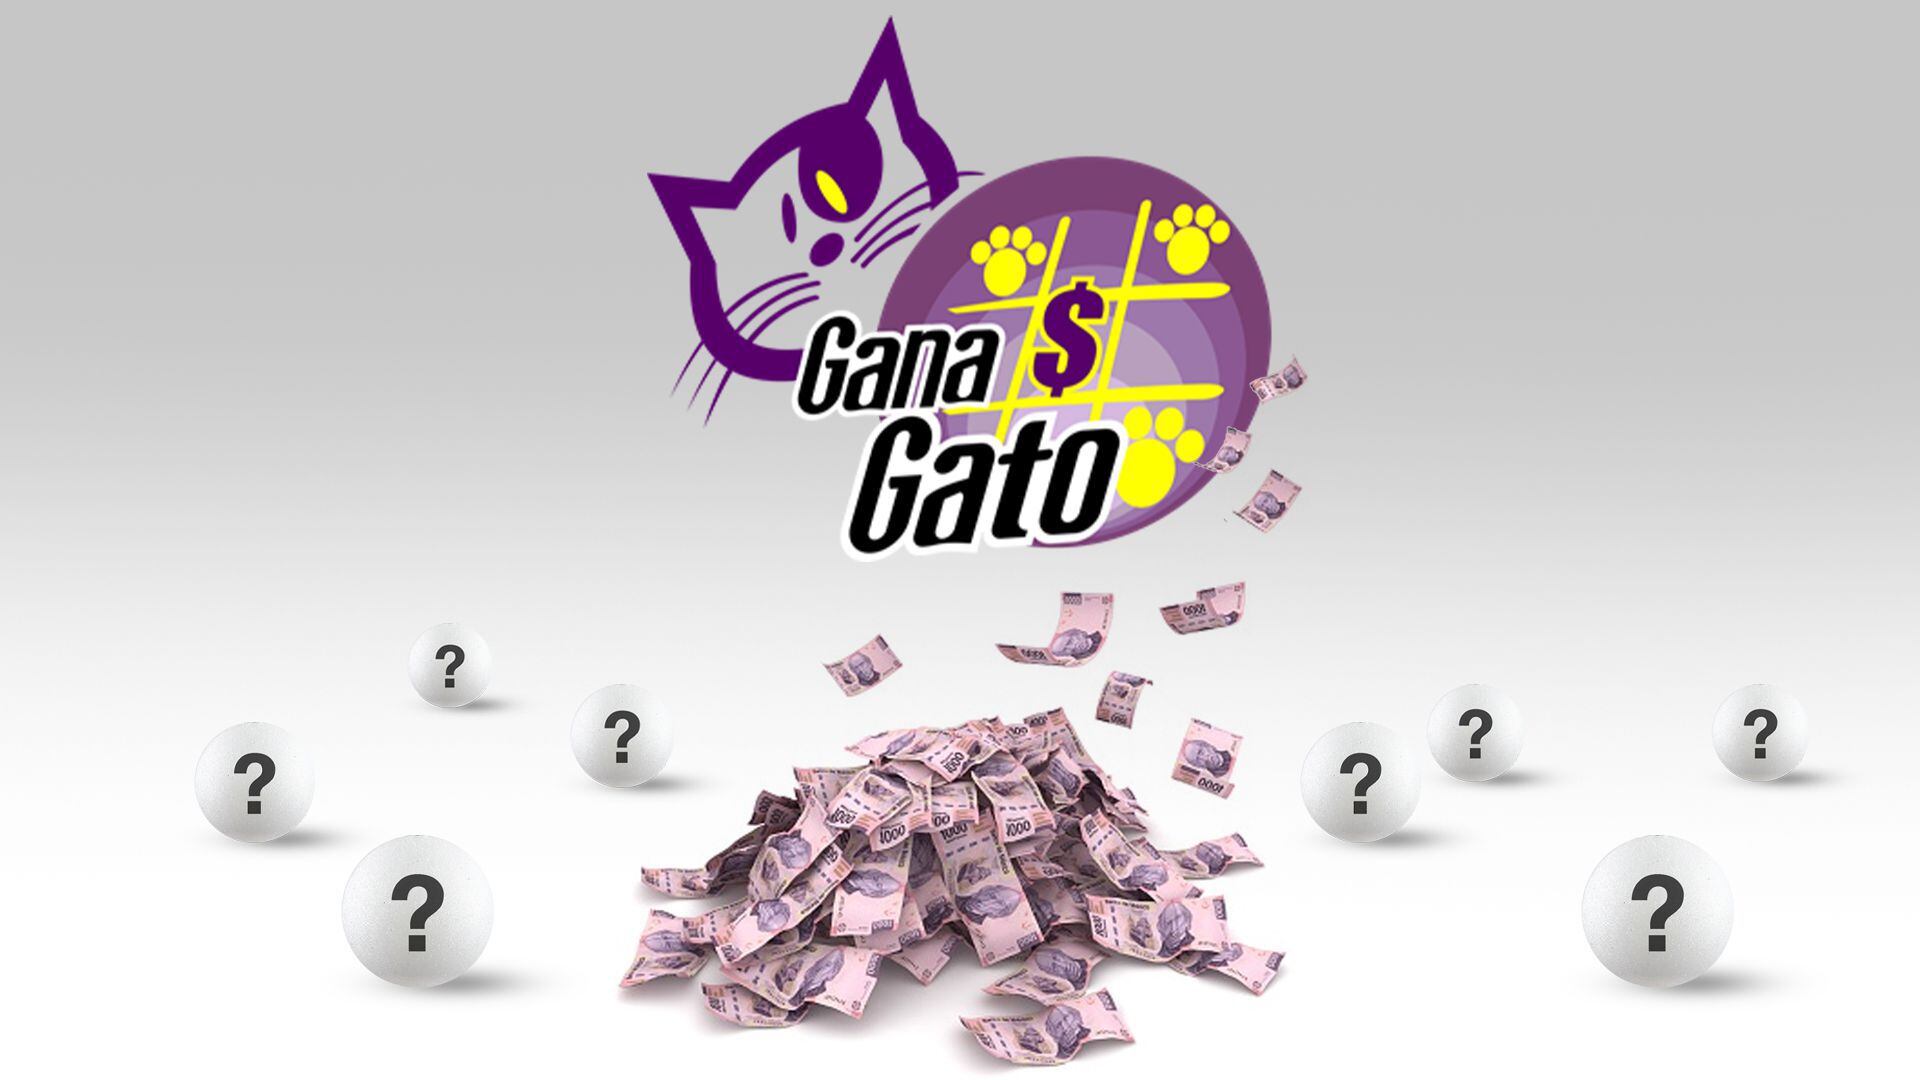 En el sorteo de hoy, Gana Gato entregó $388,736.78 pesos en premios (Infobae/Jovani Pérez)